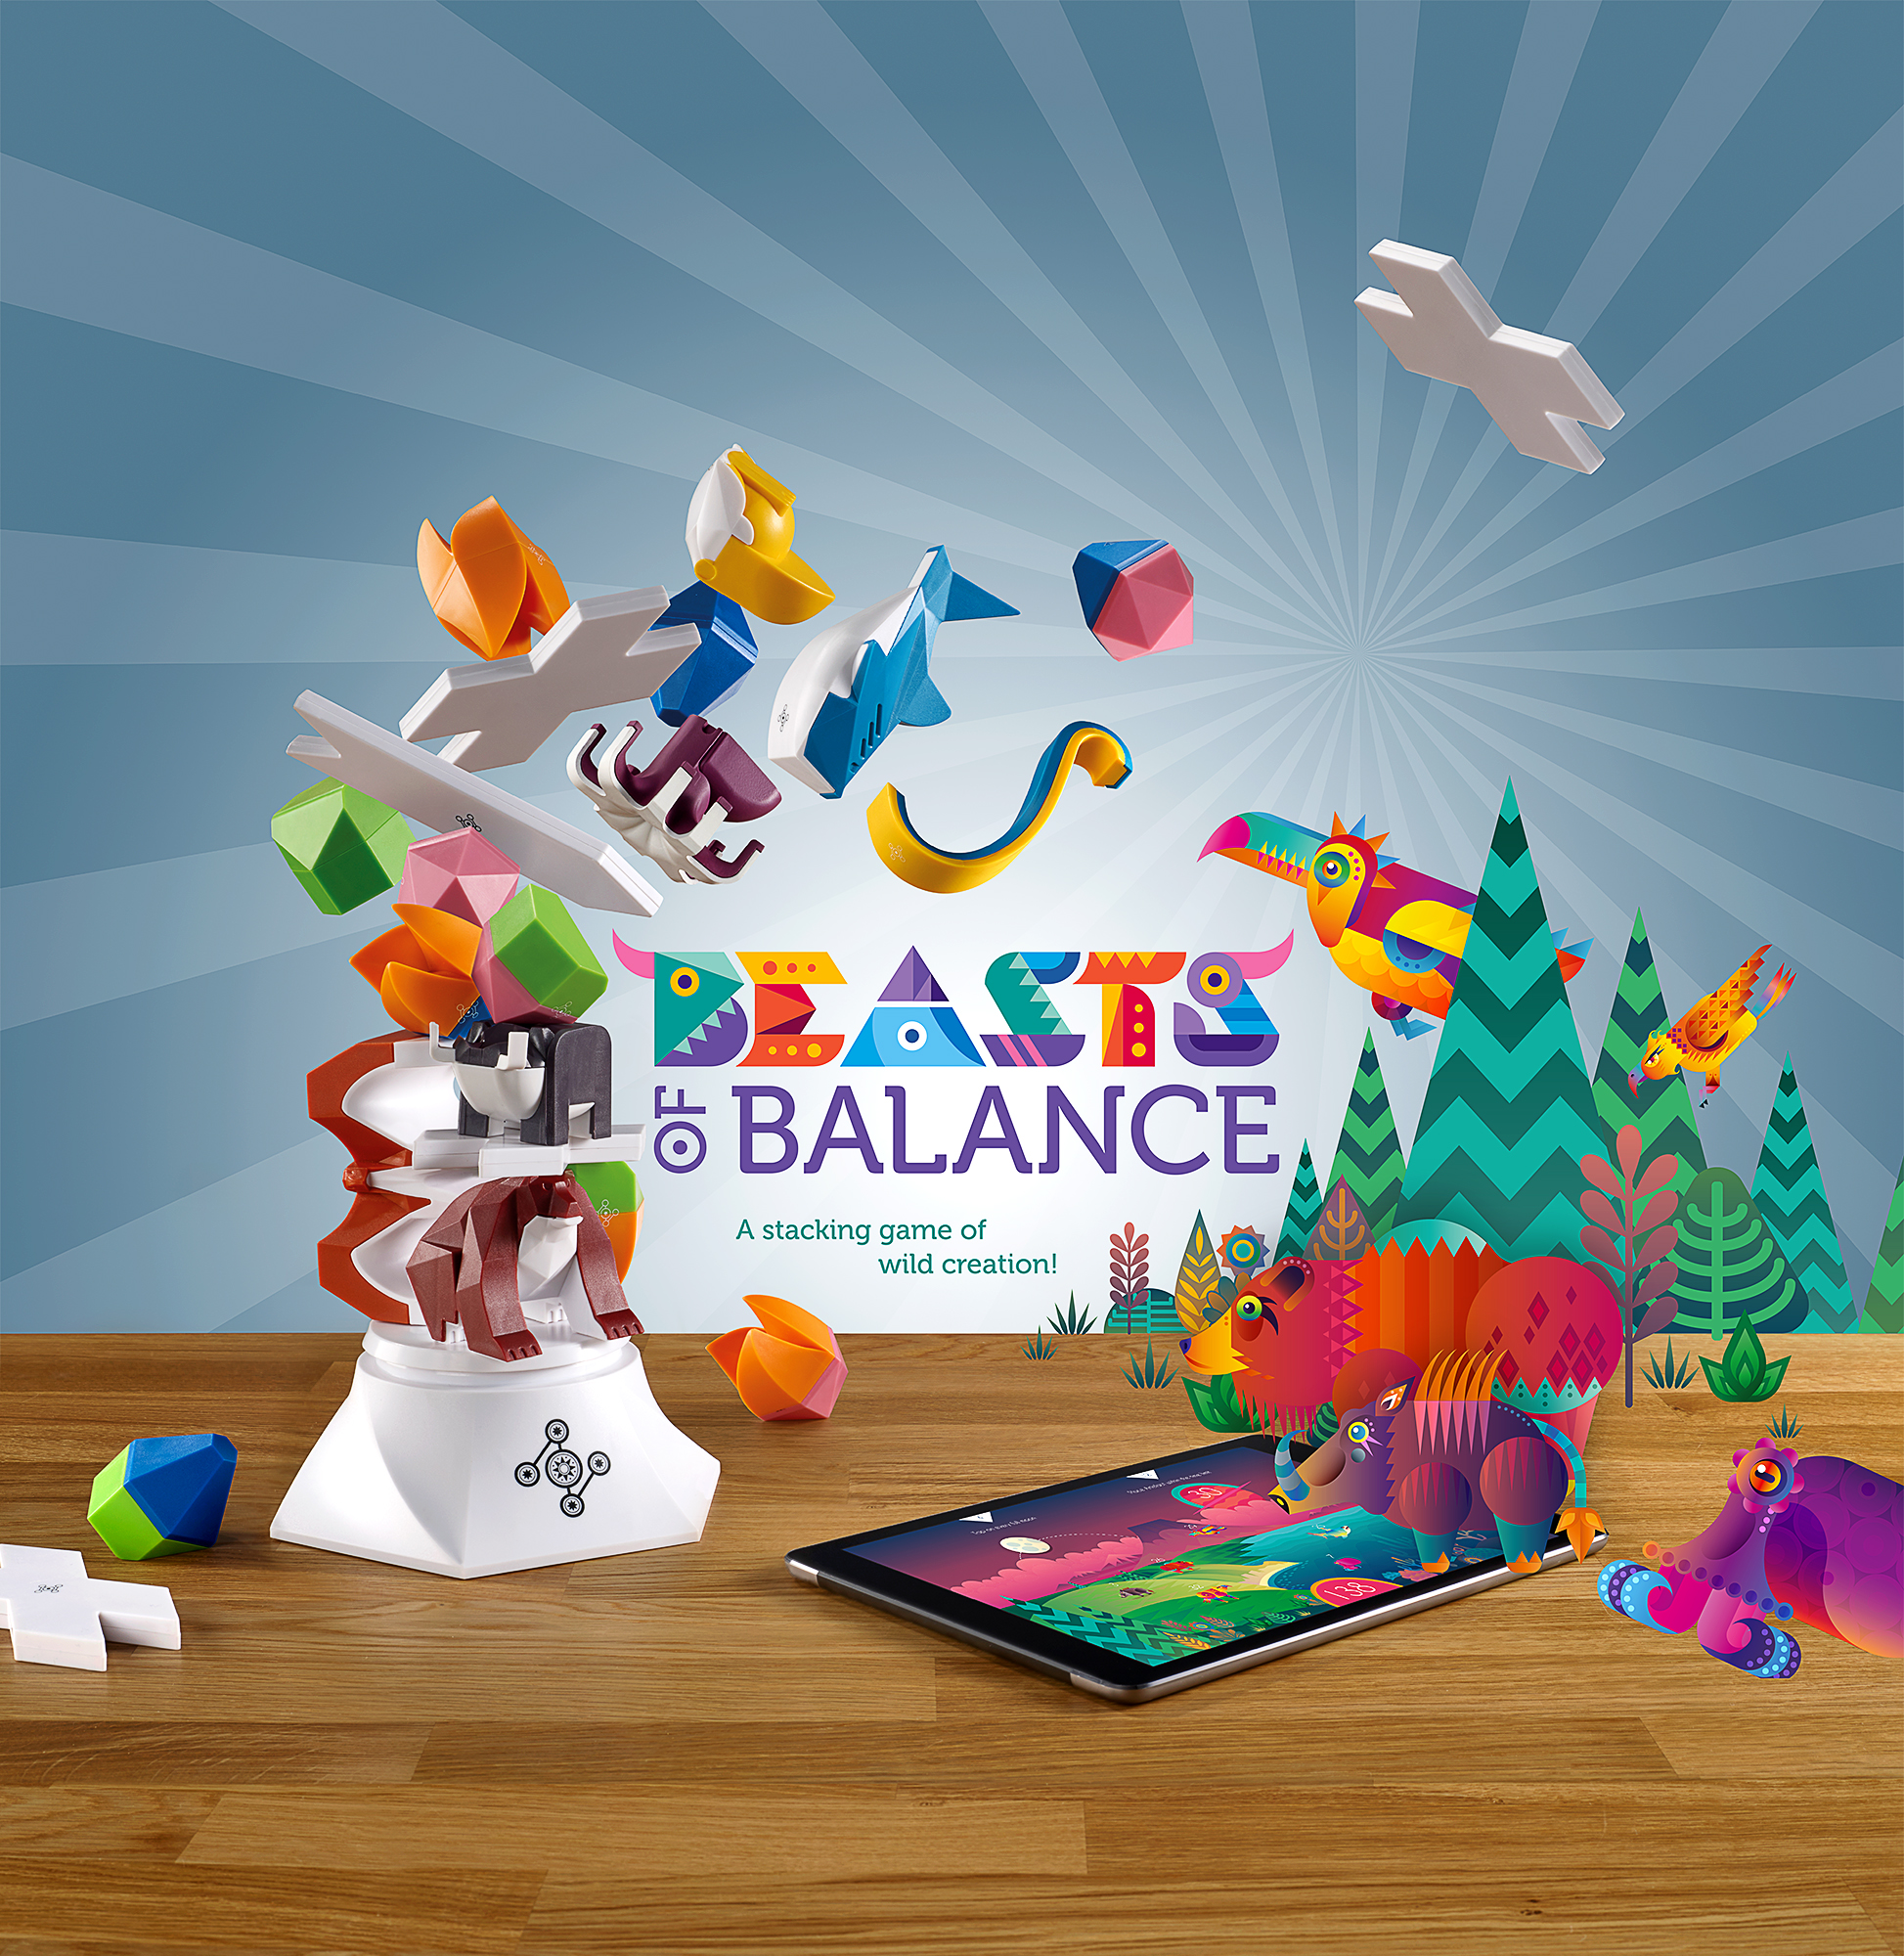 Beasts of balance final artwork.jpg